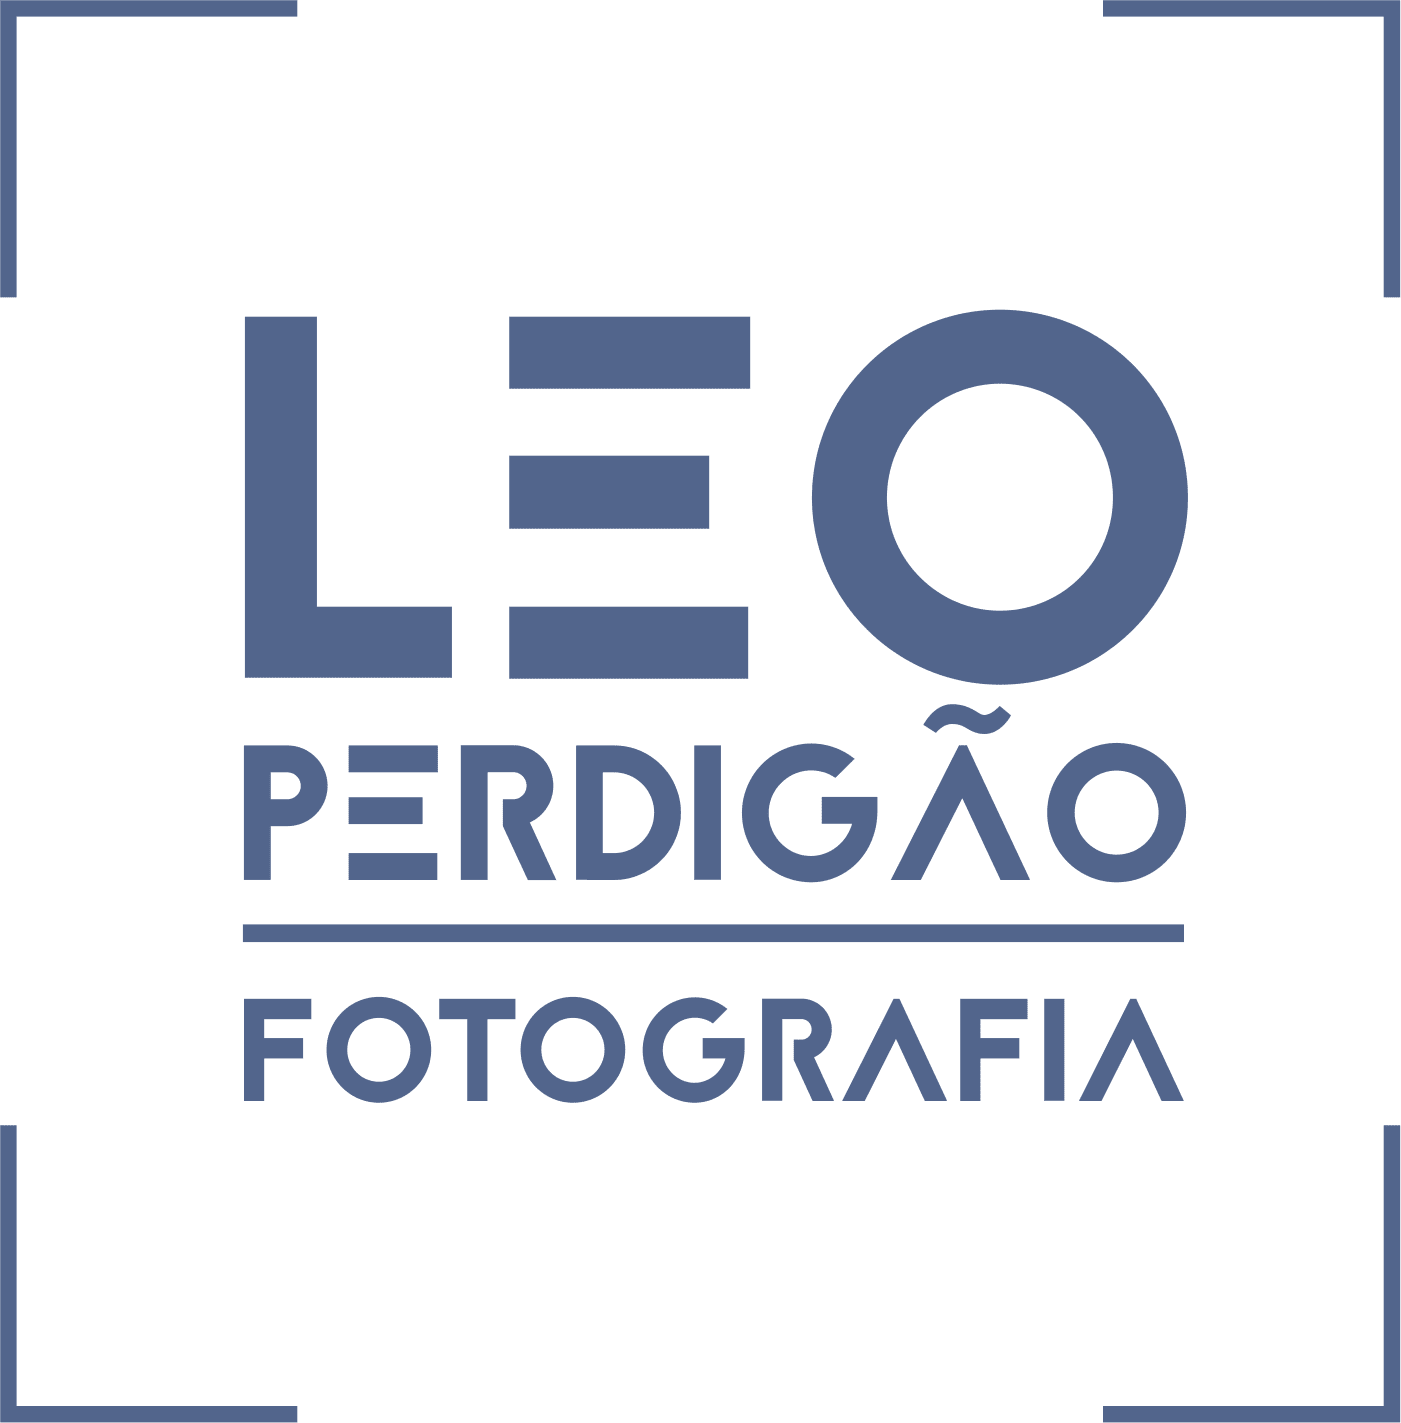 Leo Perdigão Fotografia